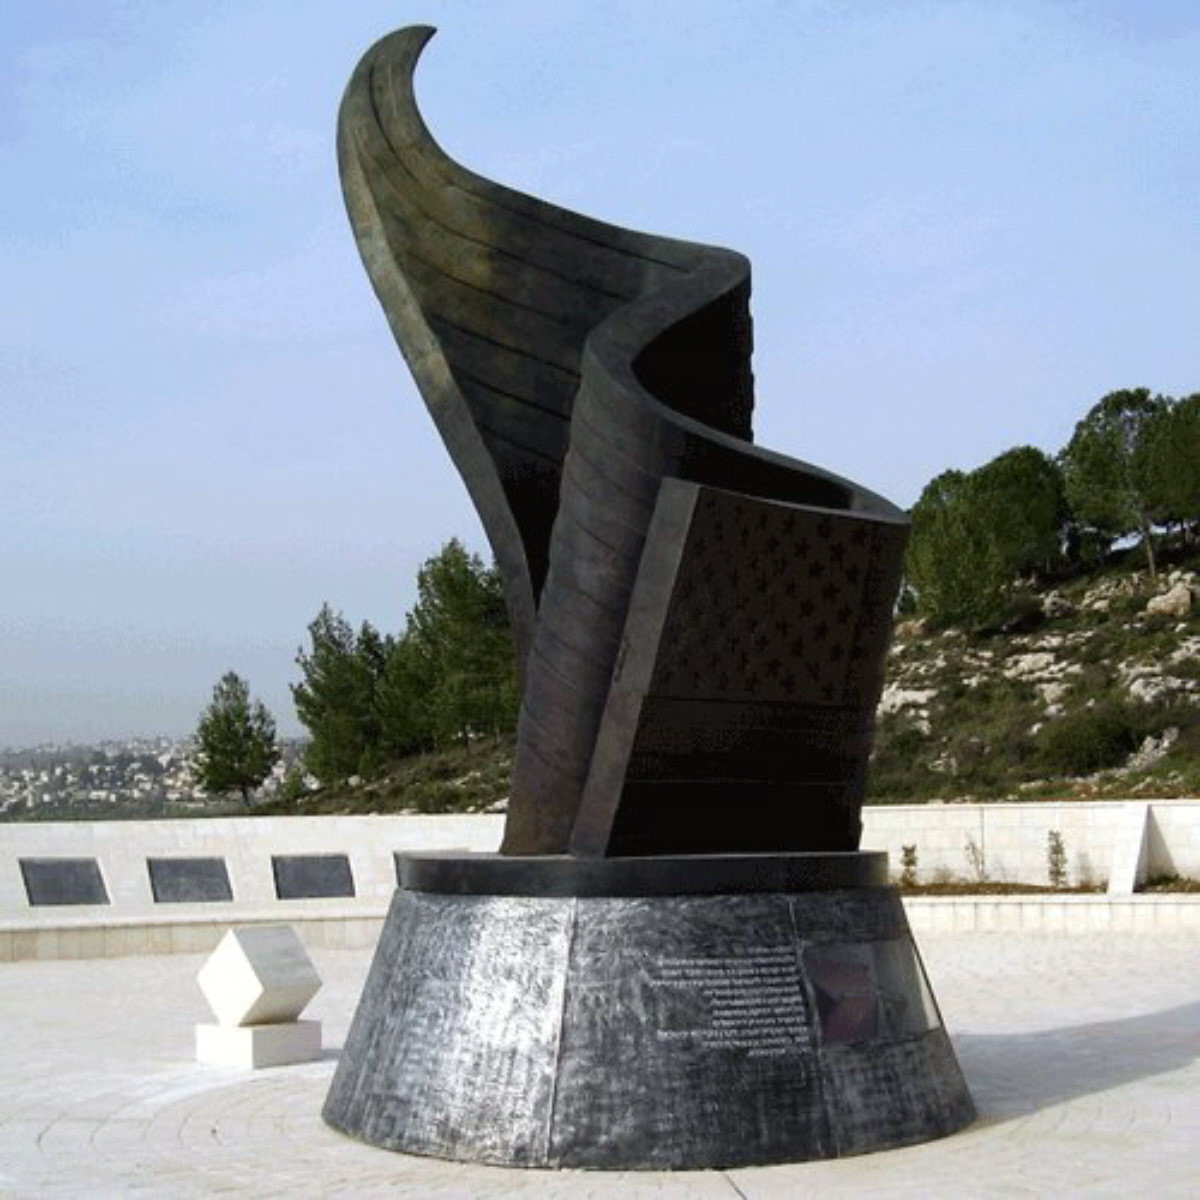 Living Memorial 911 Israel Memorial In Jerusalem for September 11 2001